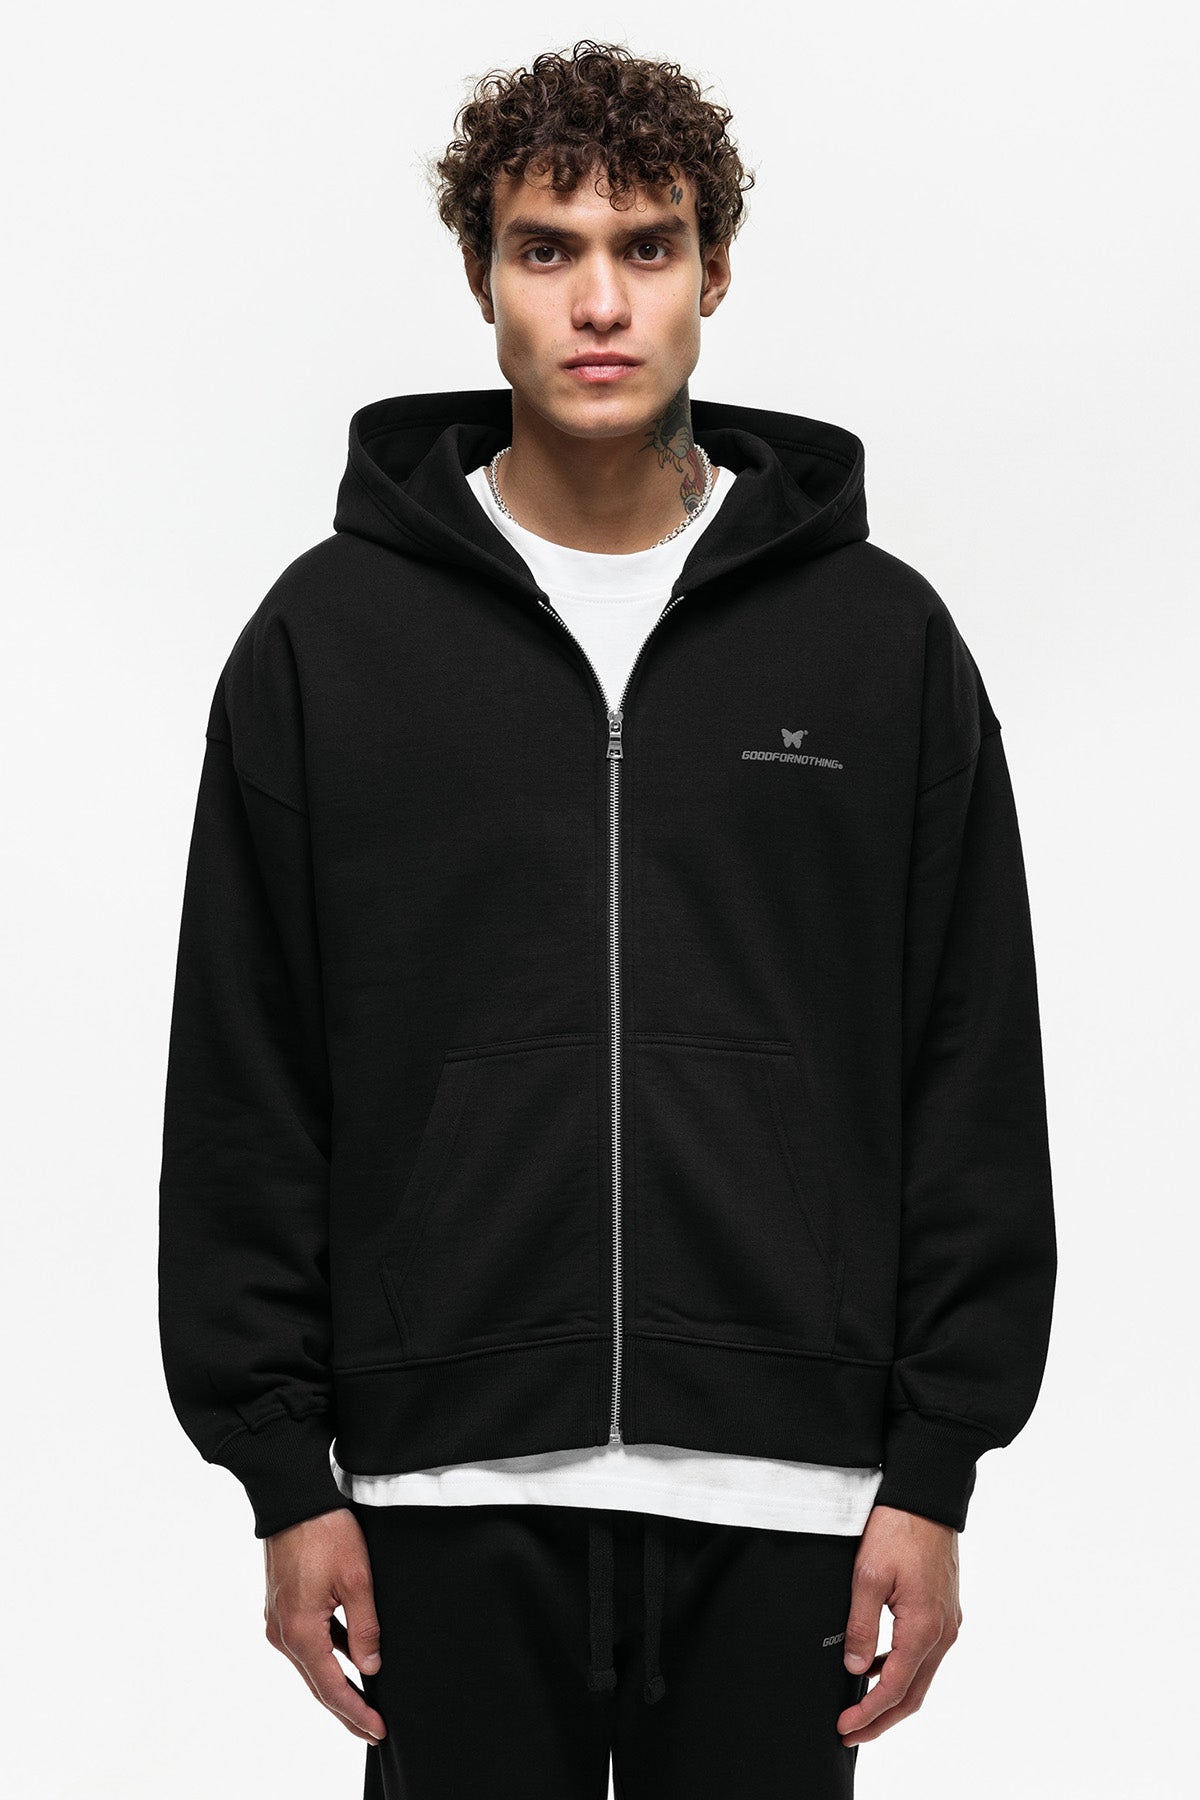 Mens Graphic Hoodies & Sweatshirts, Mens Streetwear